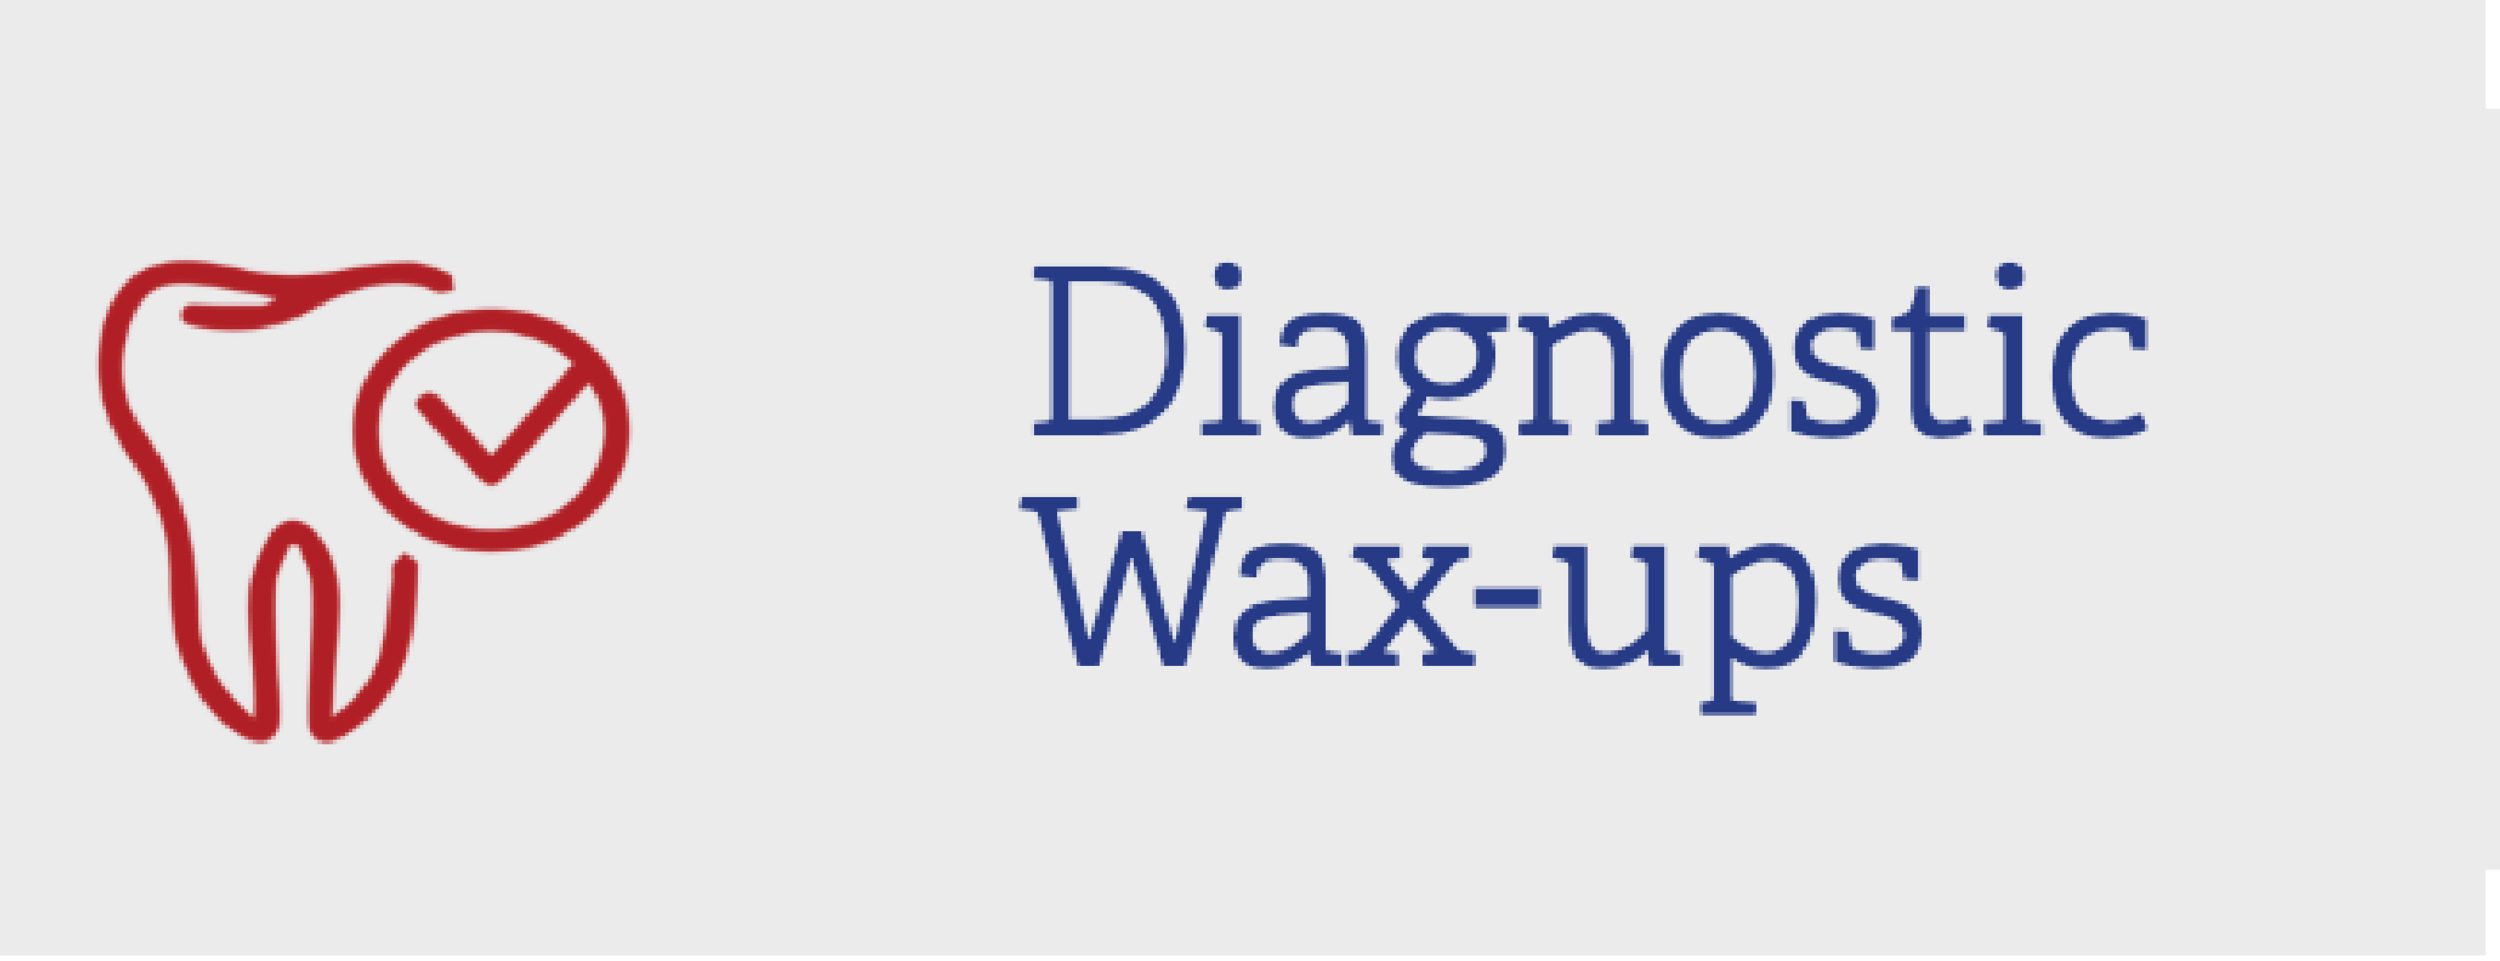 SERVICES_diagnostic wax-ups.png